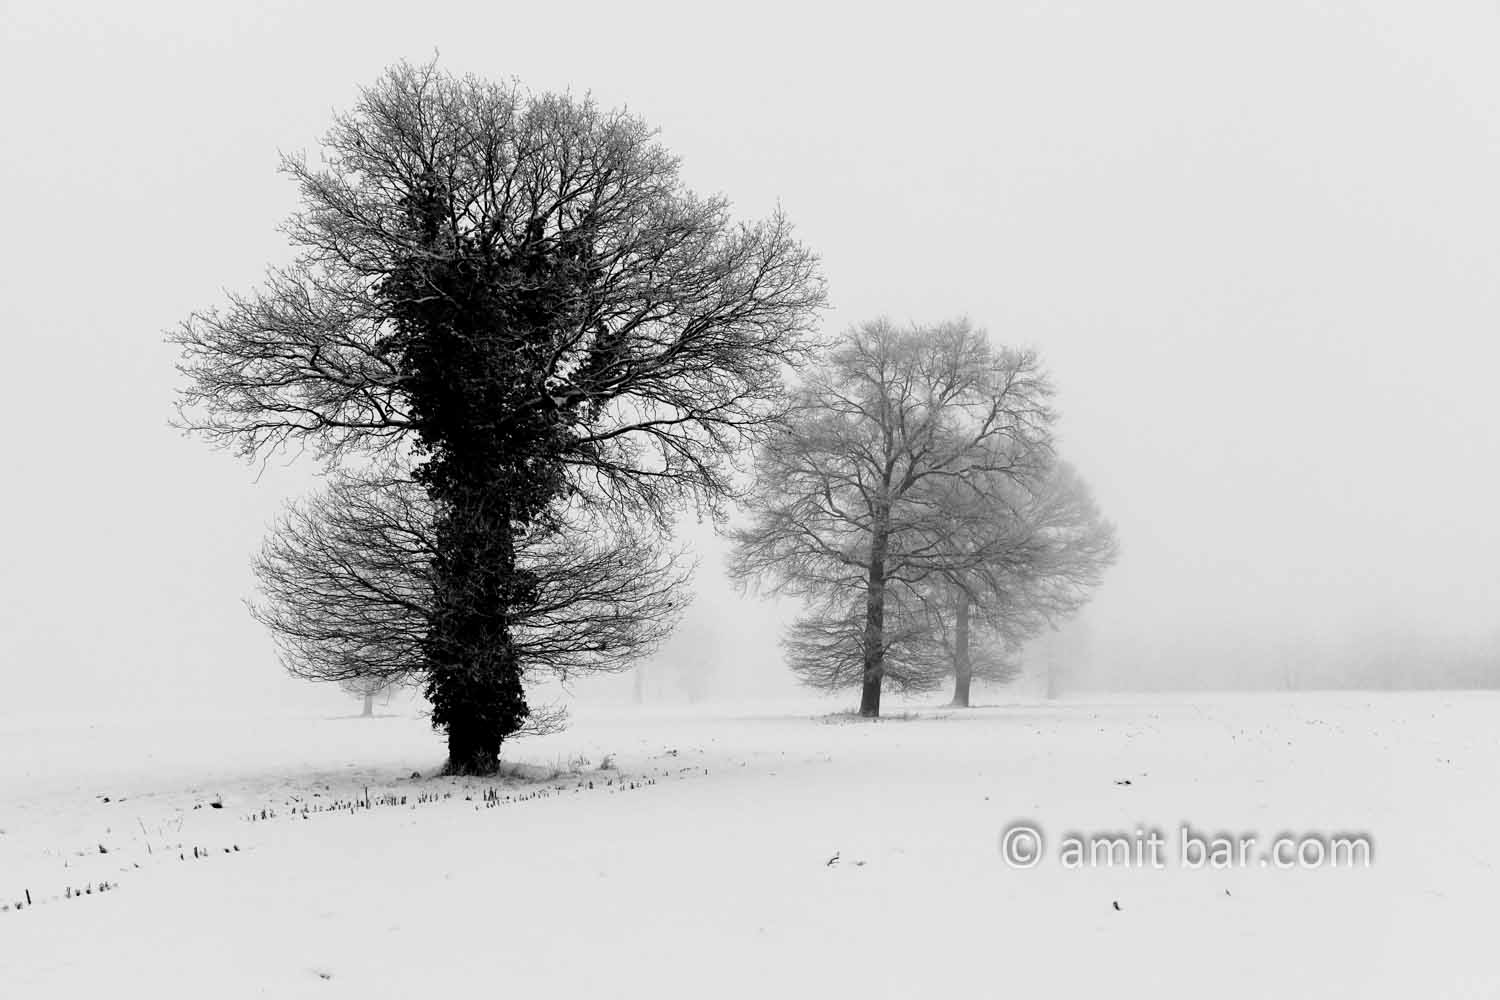 Oaks in snow I: Three oaks in the mist